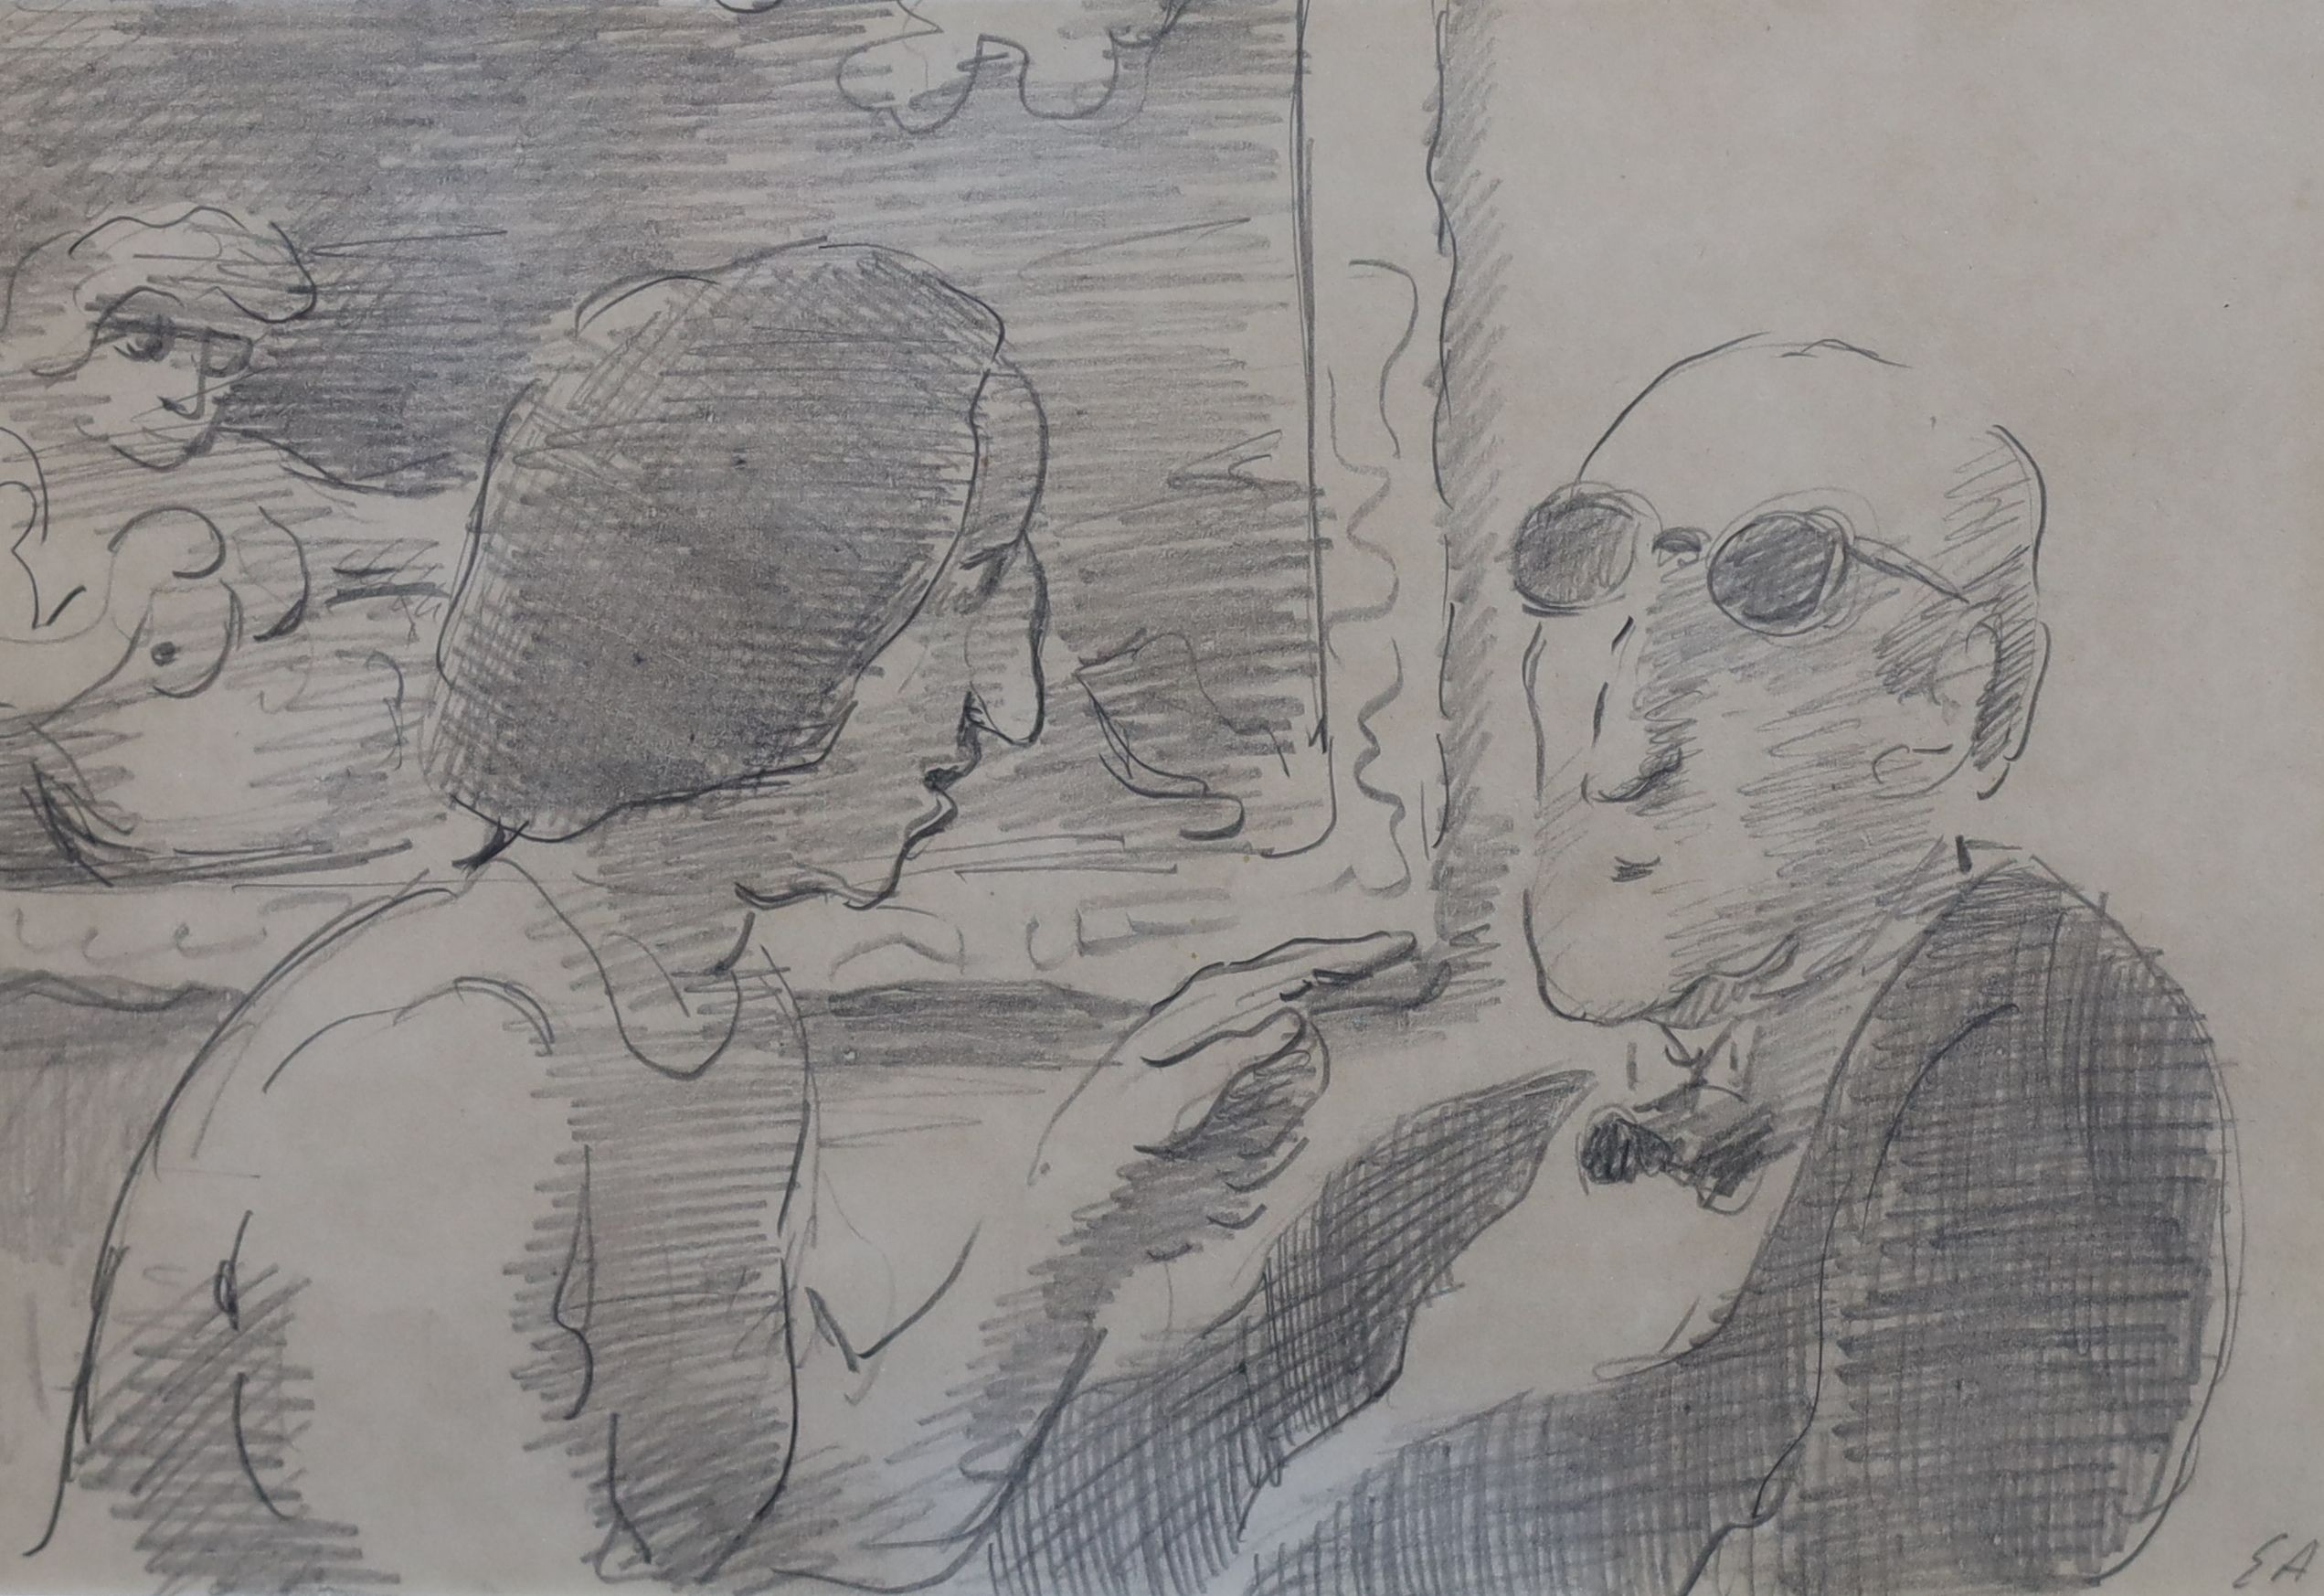 Edward Ardizzone R.A. (1900-1979), 'Argument', pencil on paper, 16 x 23.5cm